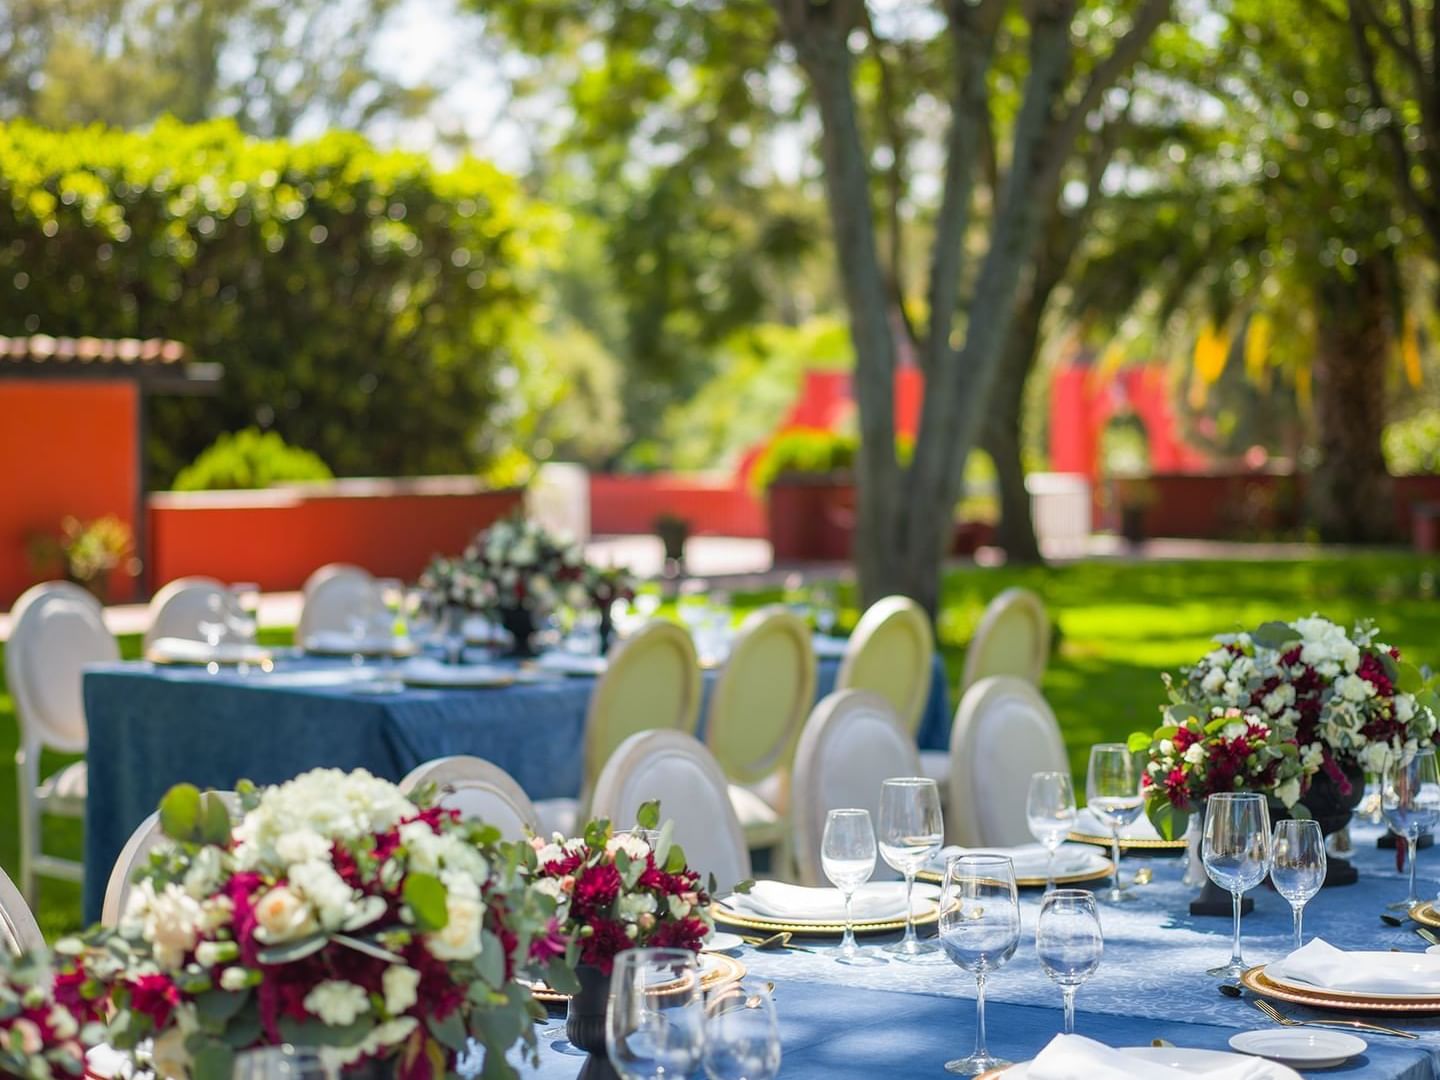 Floral table arranged at Rosales Garden in La Colección Resorts